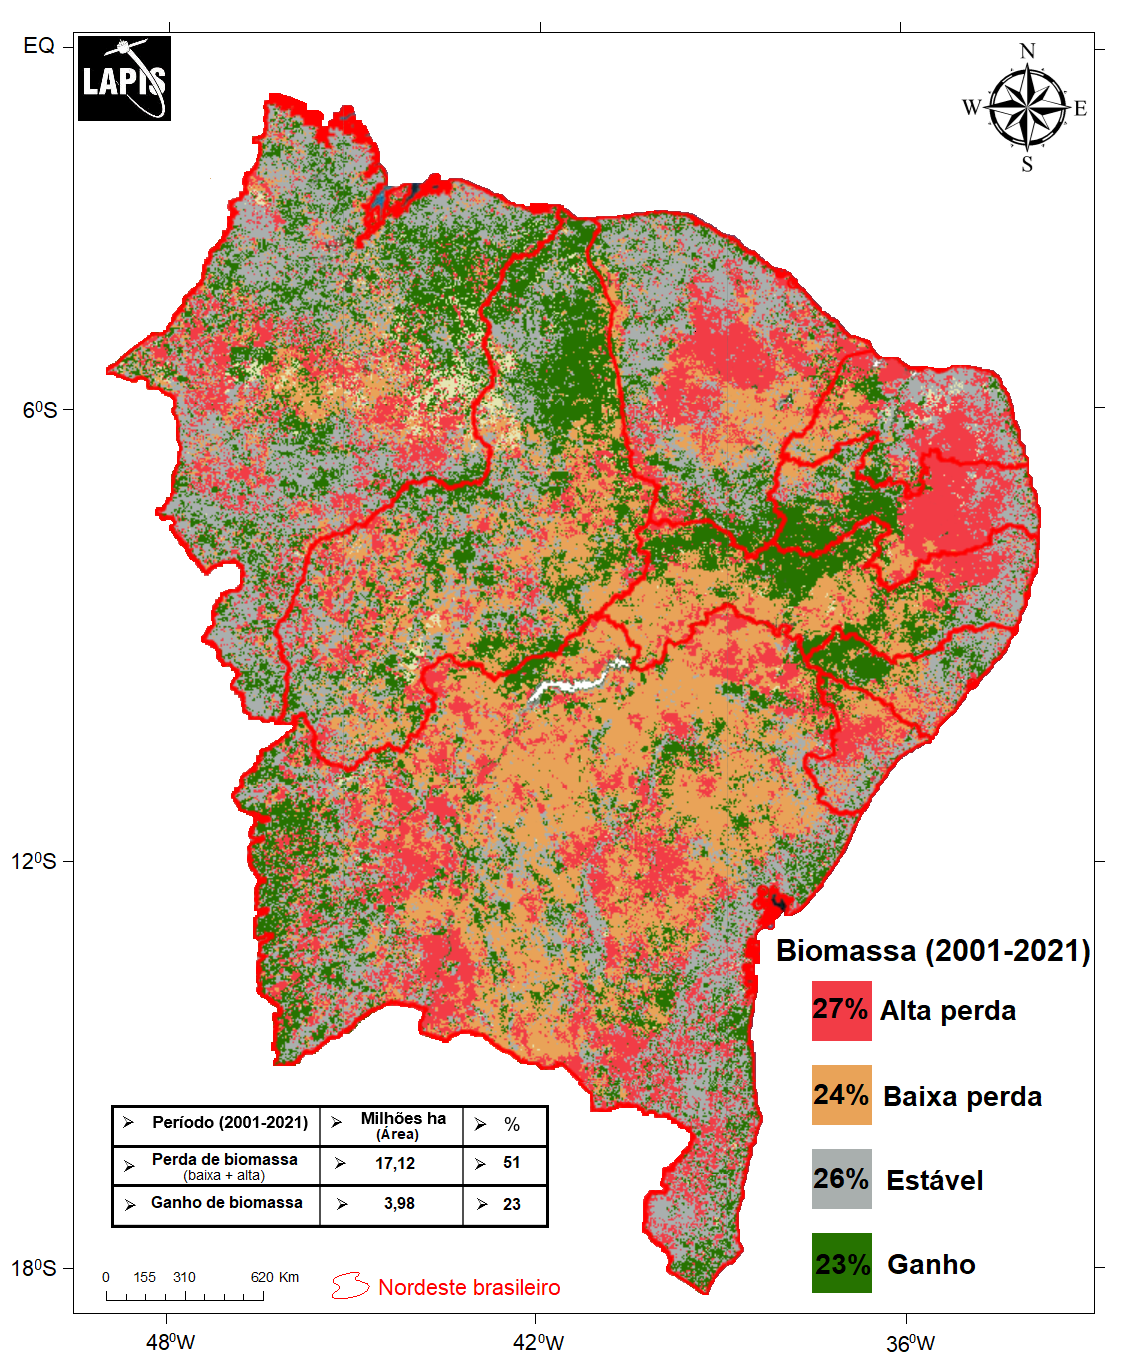 Mapa da degradação da vegetação no Nordeste brasileiro, processado no QGIS